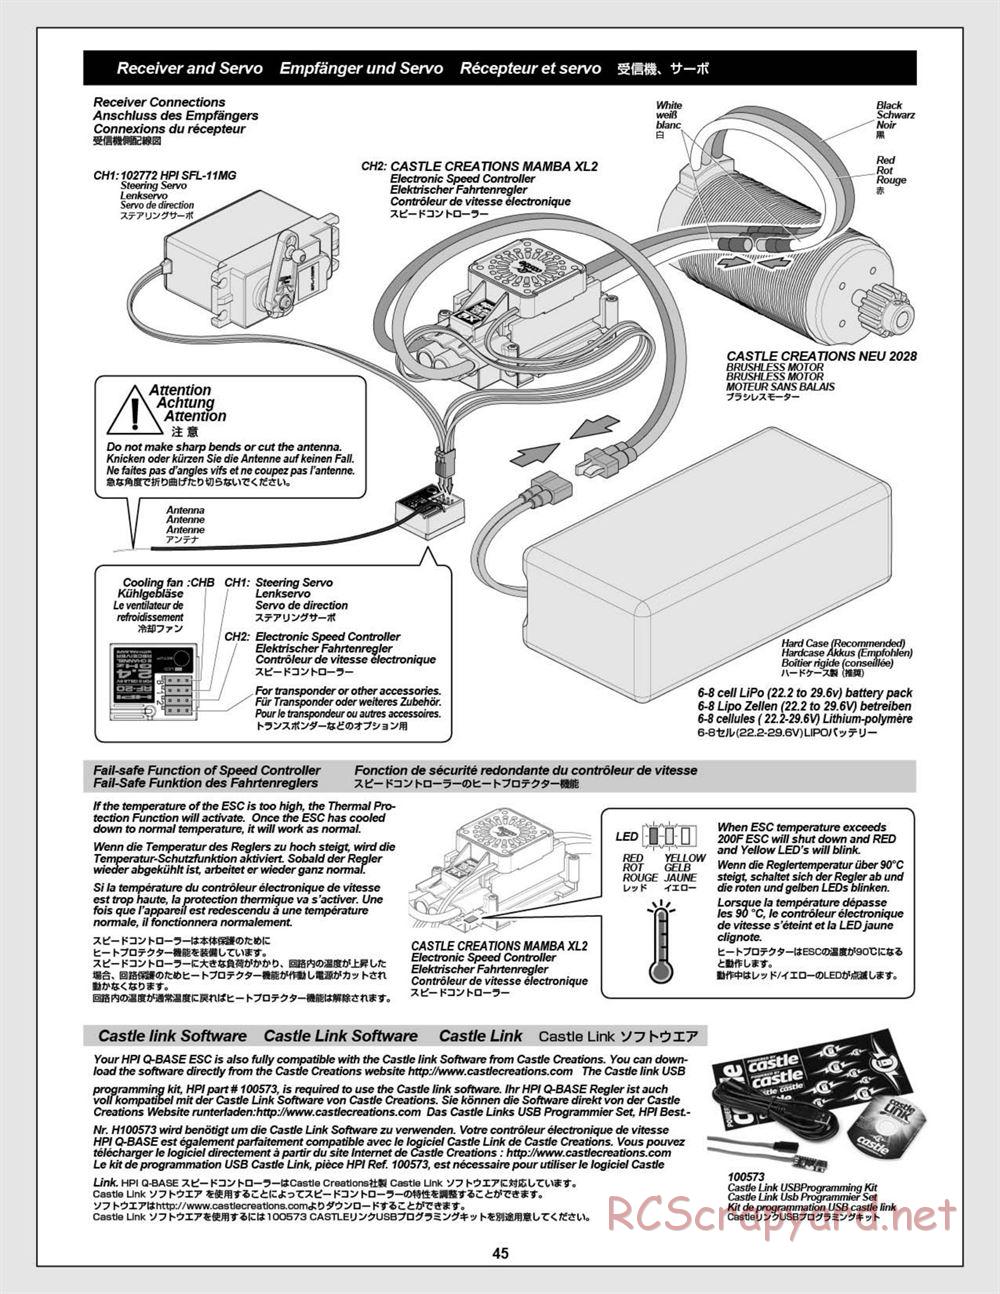 HPI - Baja 5B Flux Buggy - Manual - Page 45